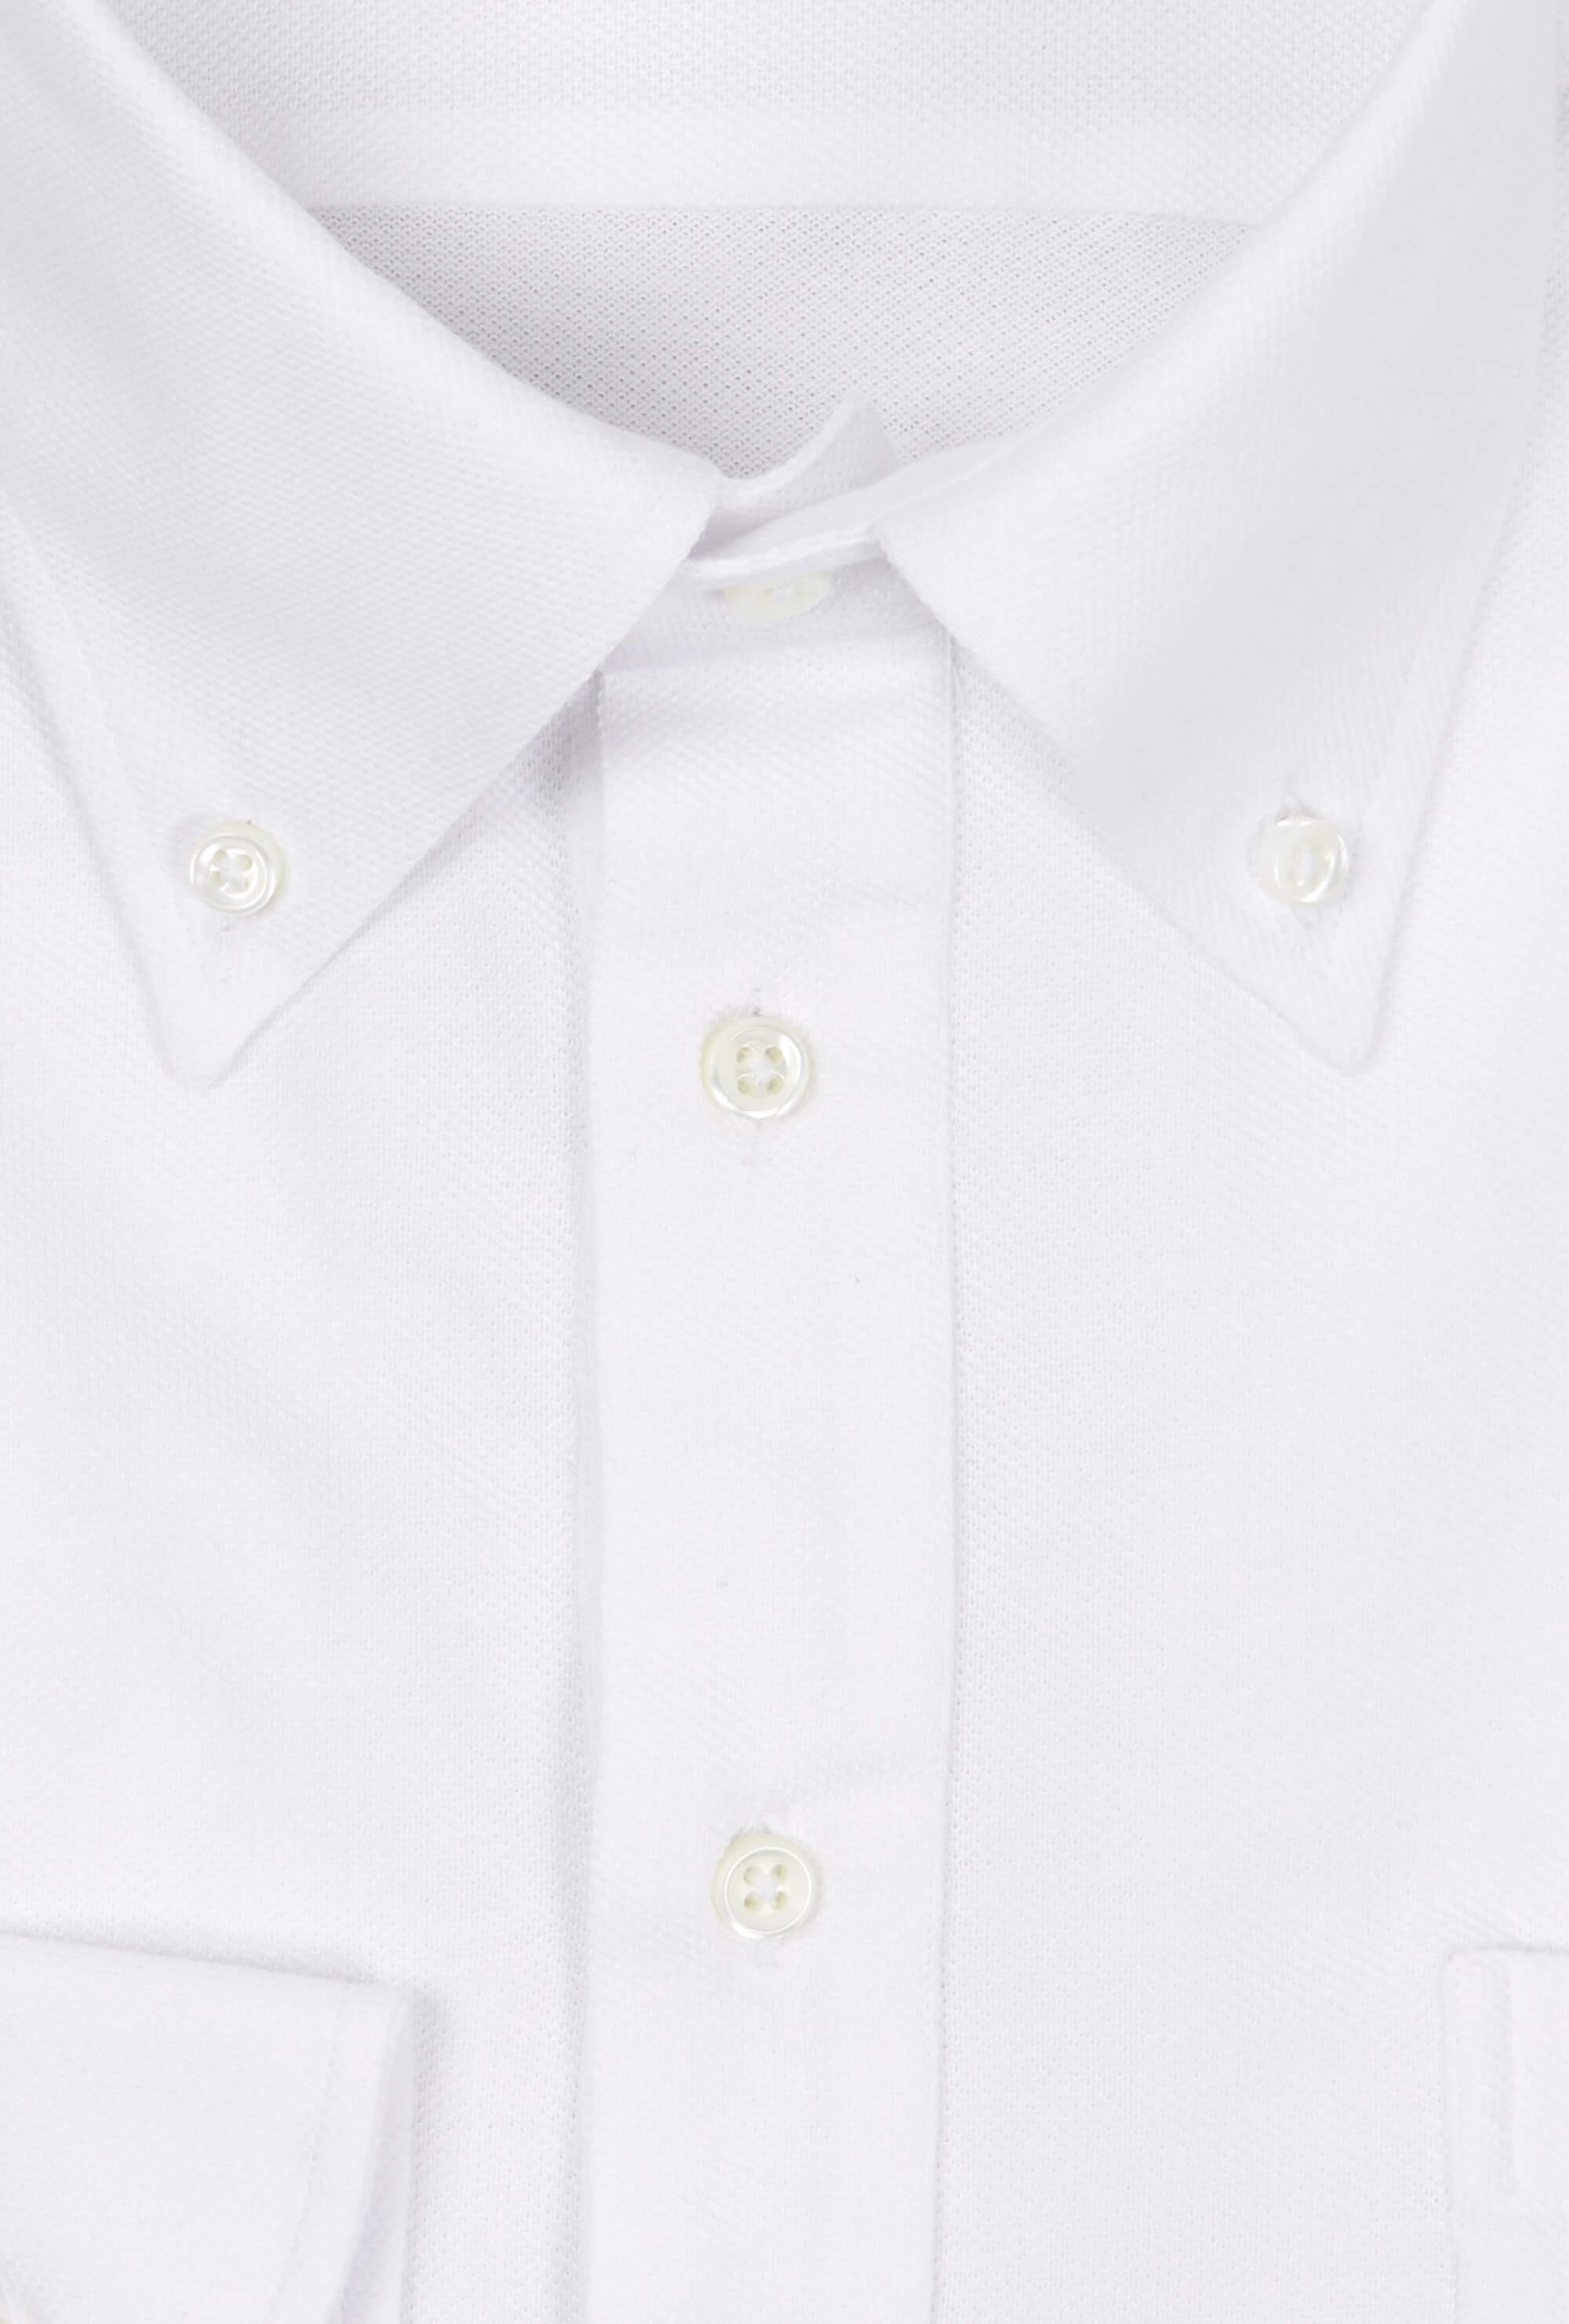 Polo Shirt Long Sleeve White